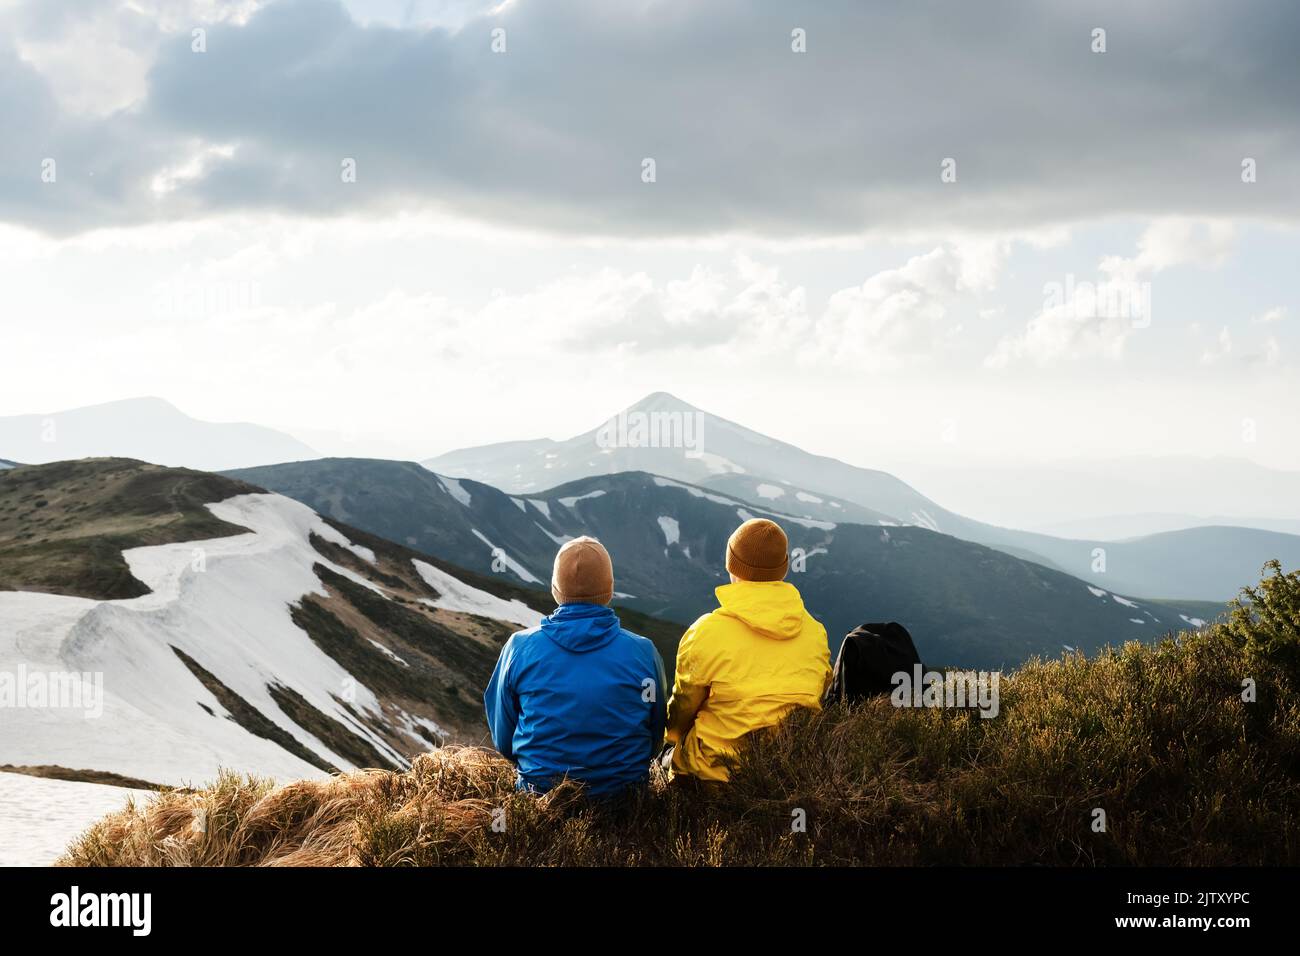 Dos turistas se sientan en el borde de un pico de montaña. Montañas con niebla al fondo. Cárpatos ucranianos, Ucrania. Fotografía de paisajes Foto de stock